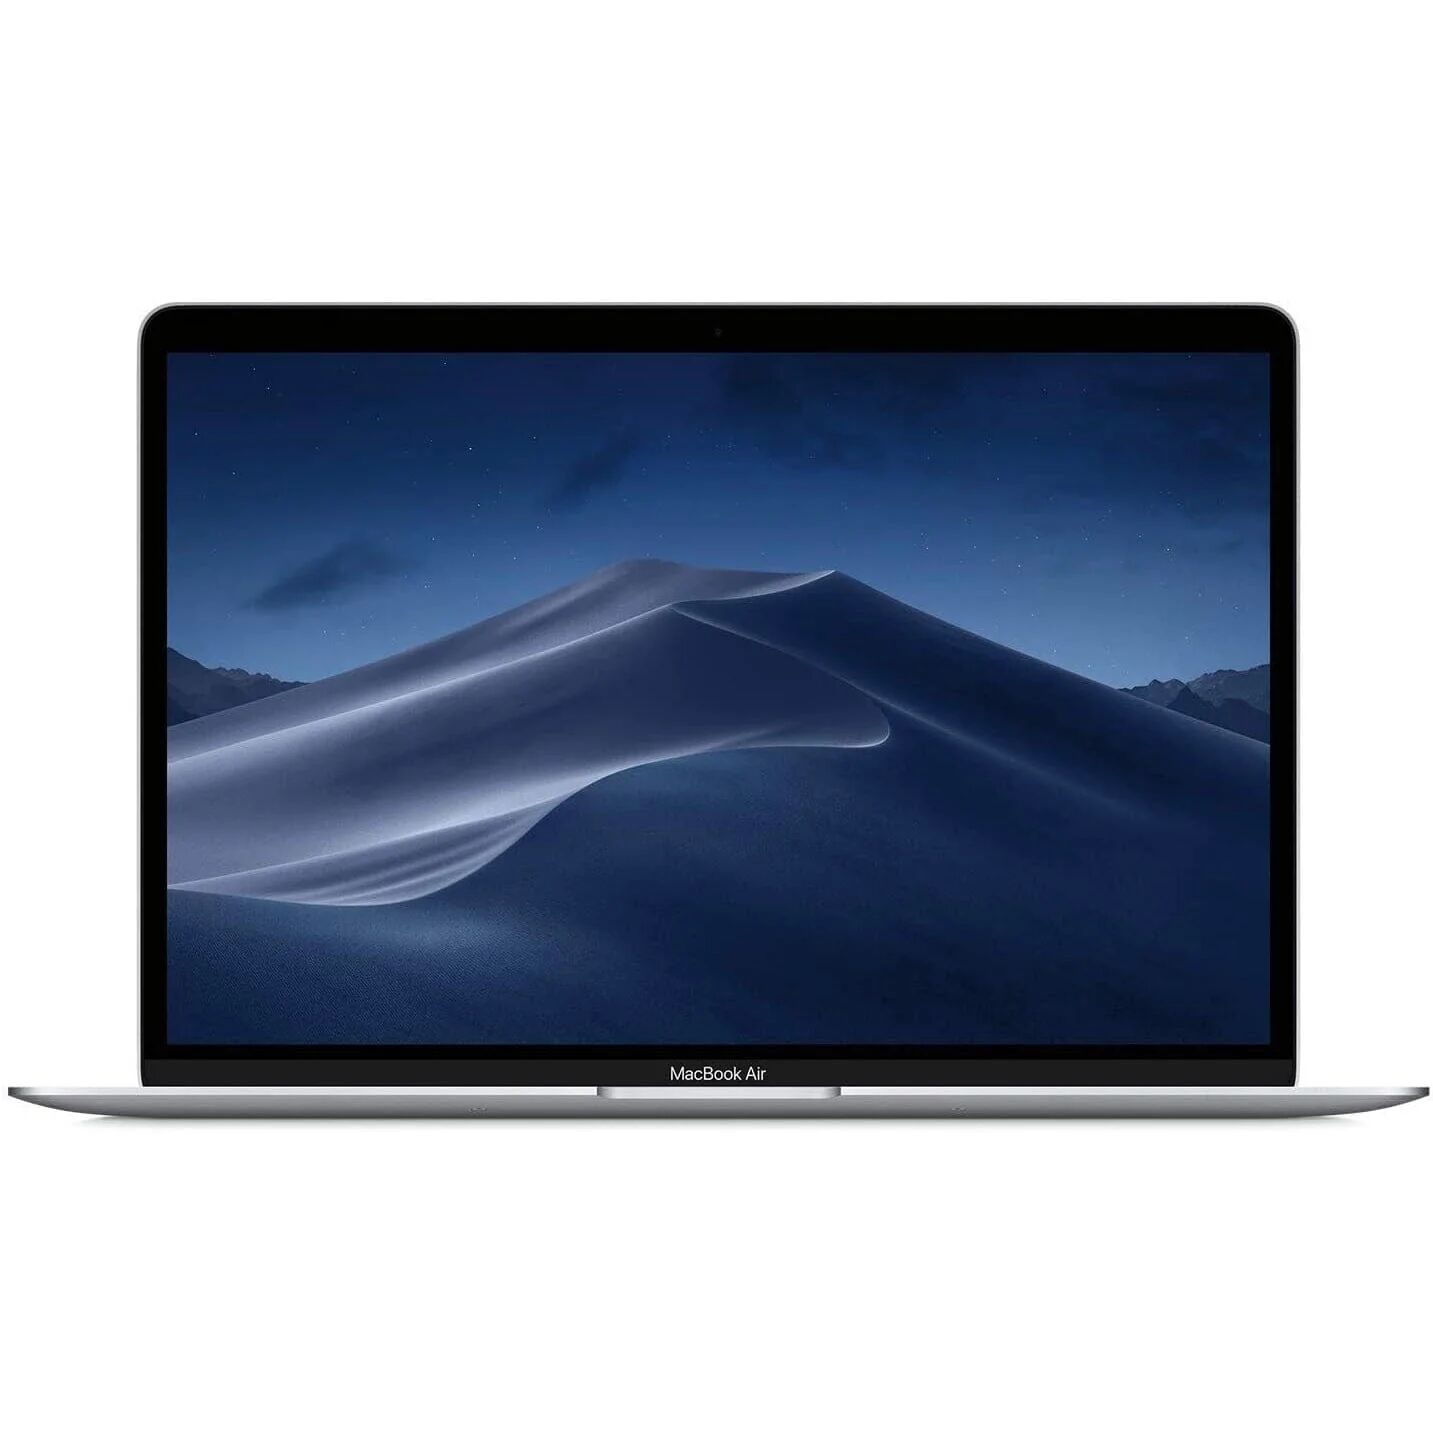 DailySale Apple MacBook Air 8GB RAM 128GB SSD MVFH2LLA (Refurbished)